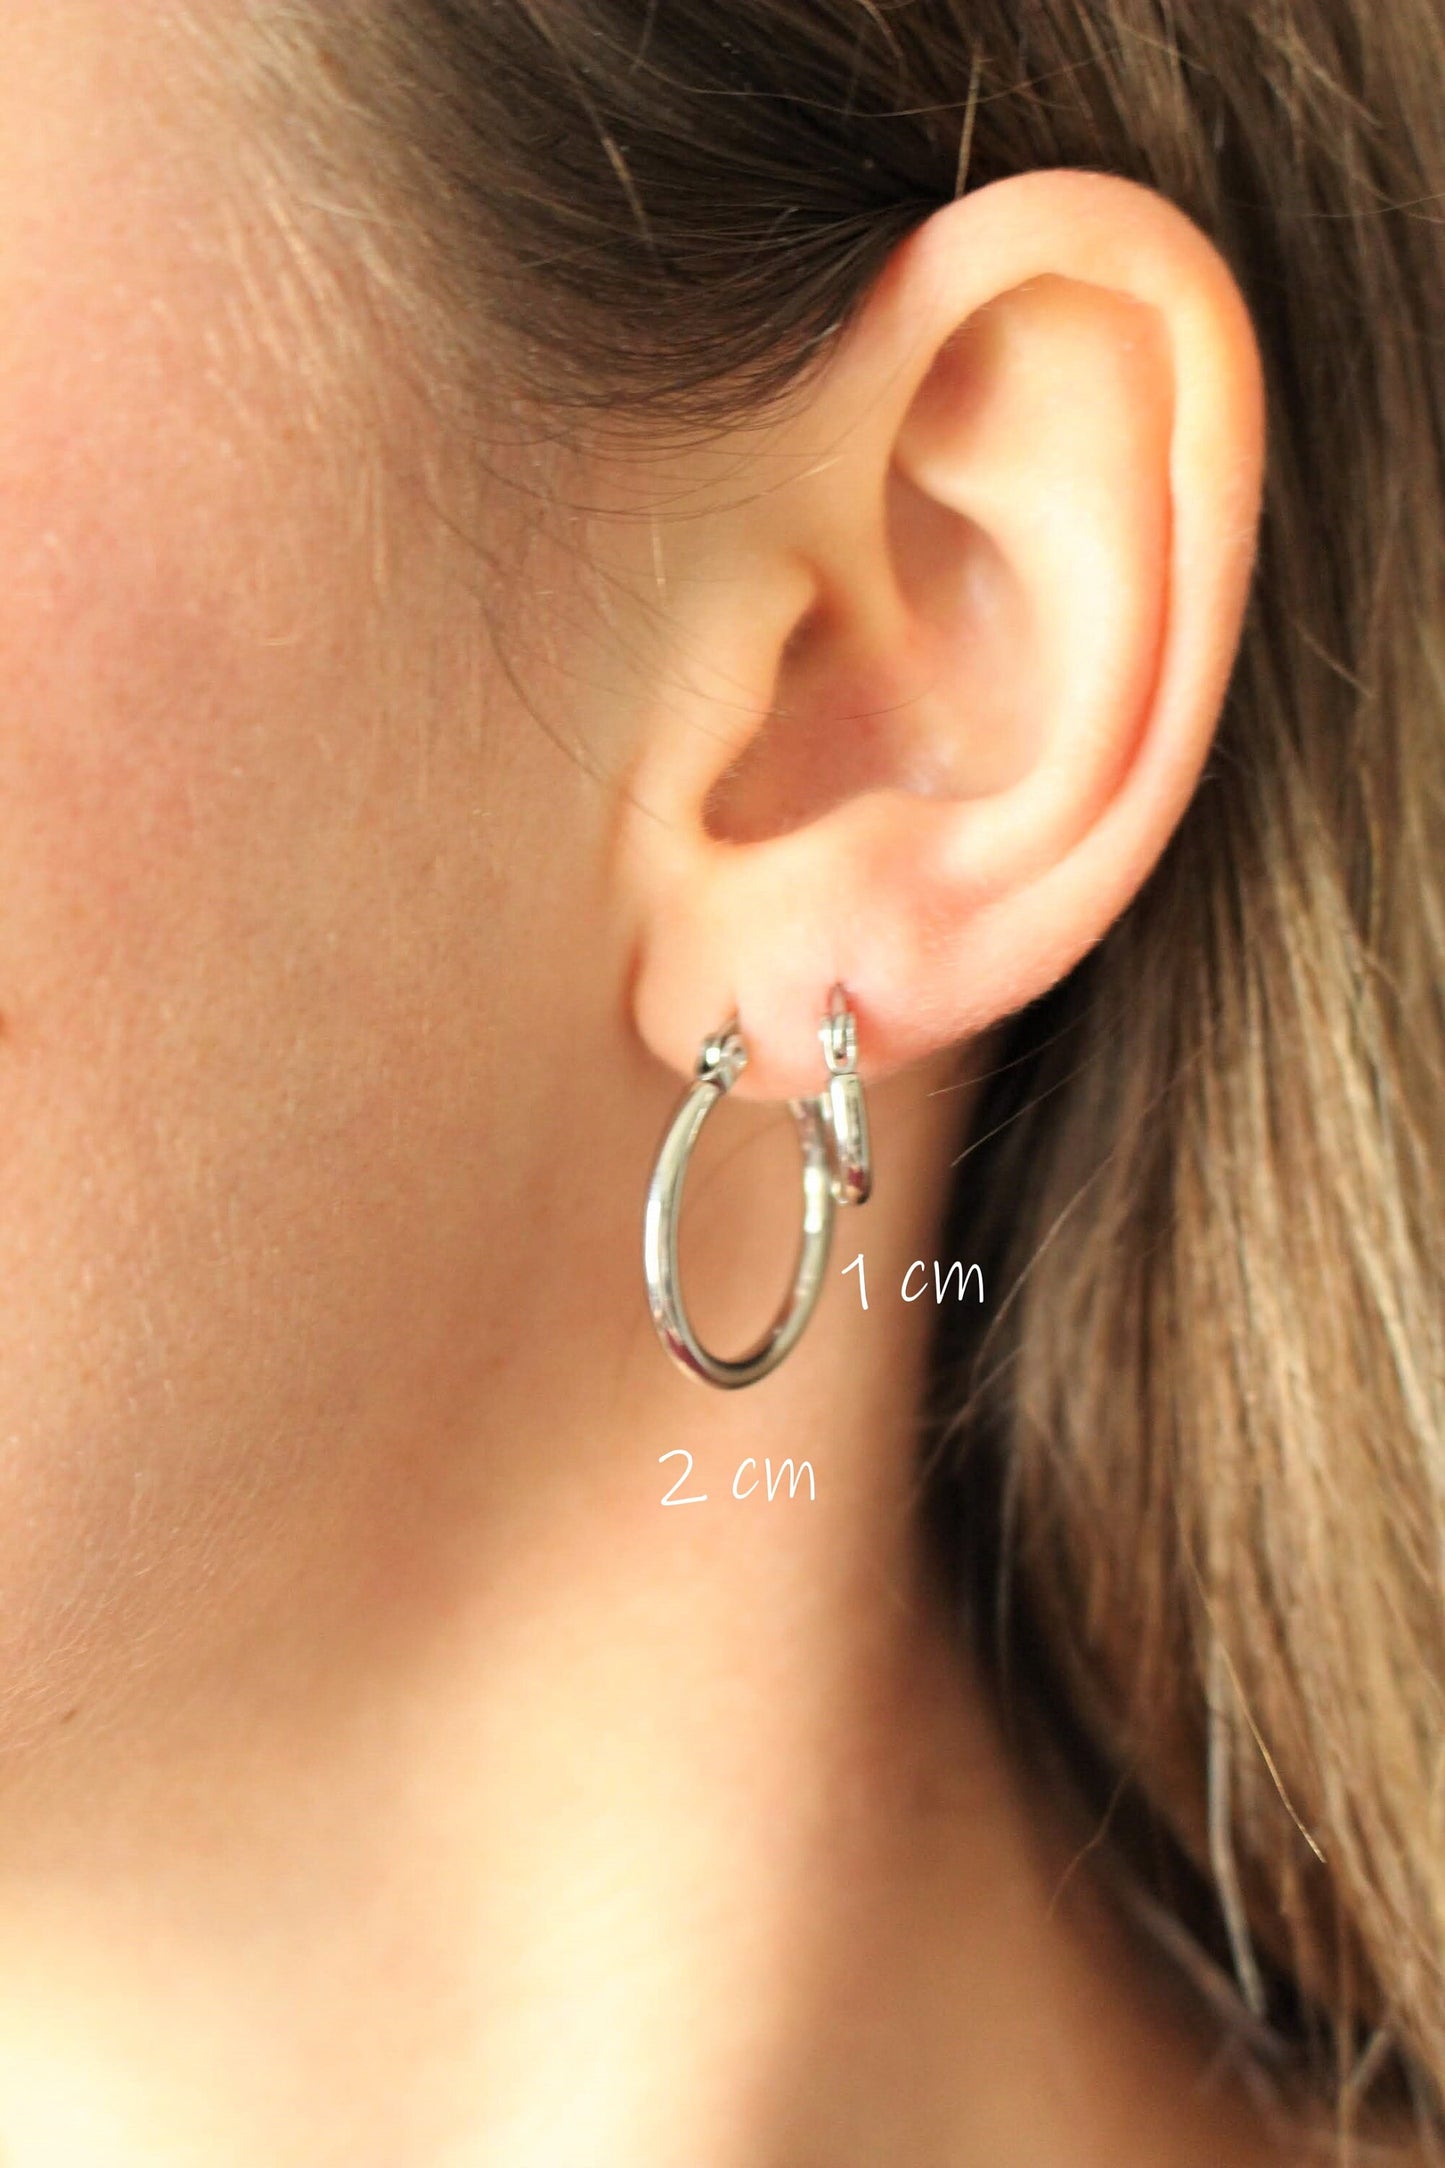 Plusieurs tailles de boucles d'oreilles en acier inoxydable | Petites créoles en argent | boucles d'oreilles femme ronde max créoles cercle bijoux argent